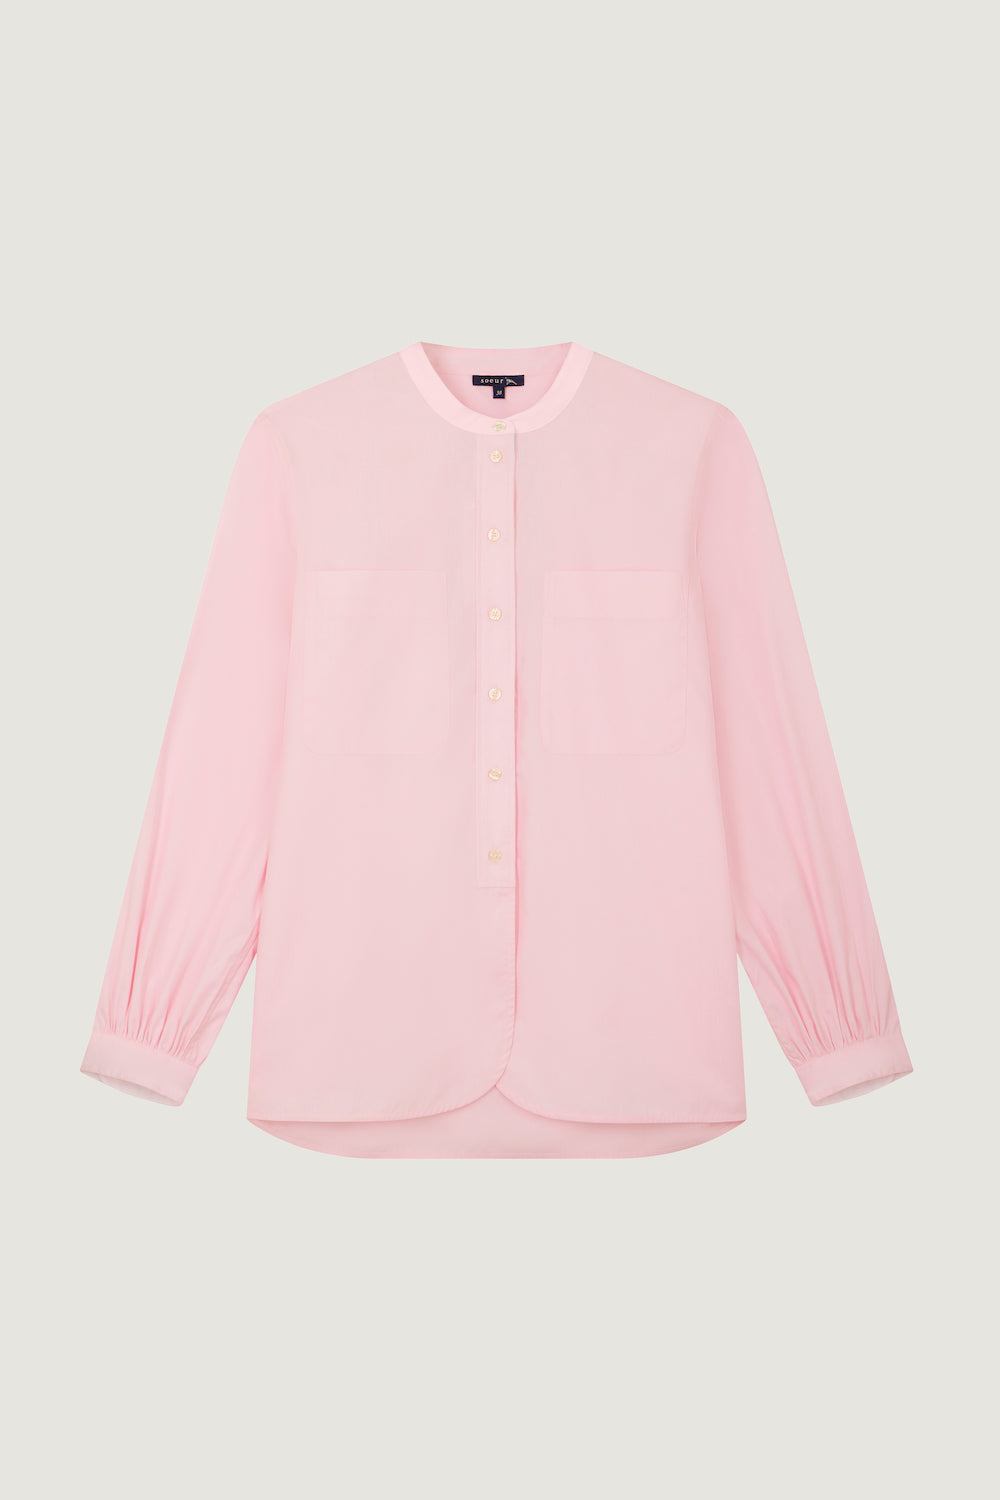 Pink Cotton Laurette Shirt